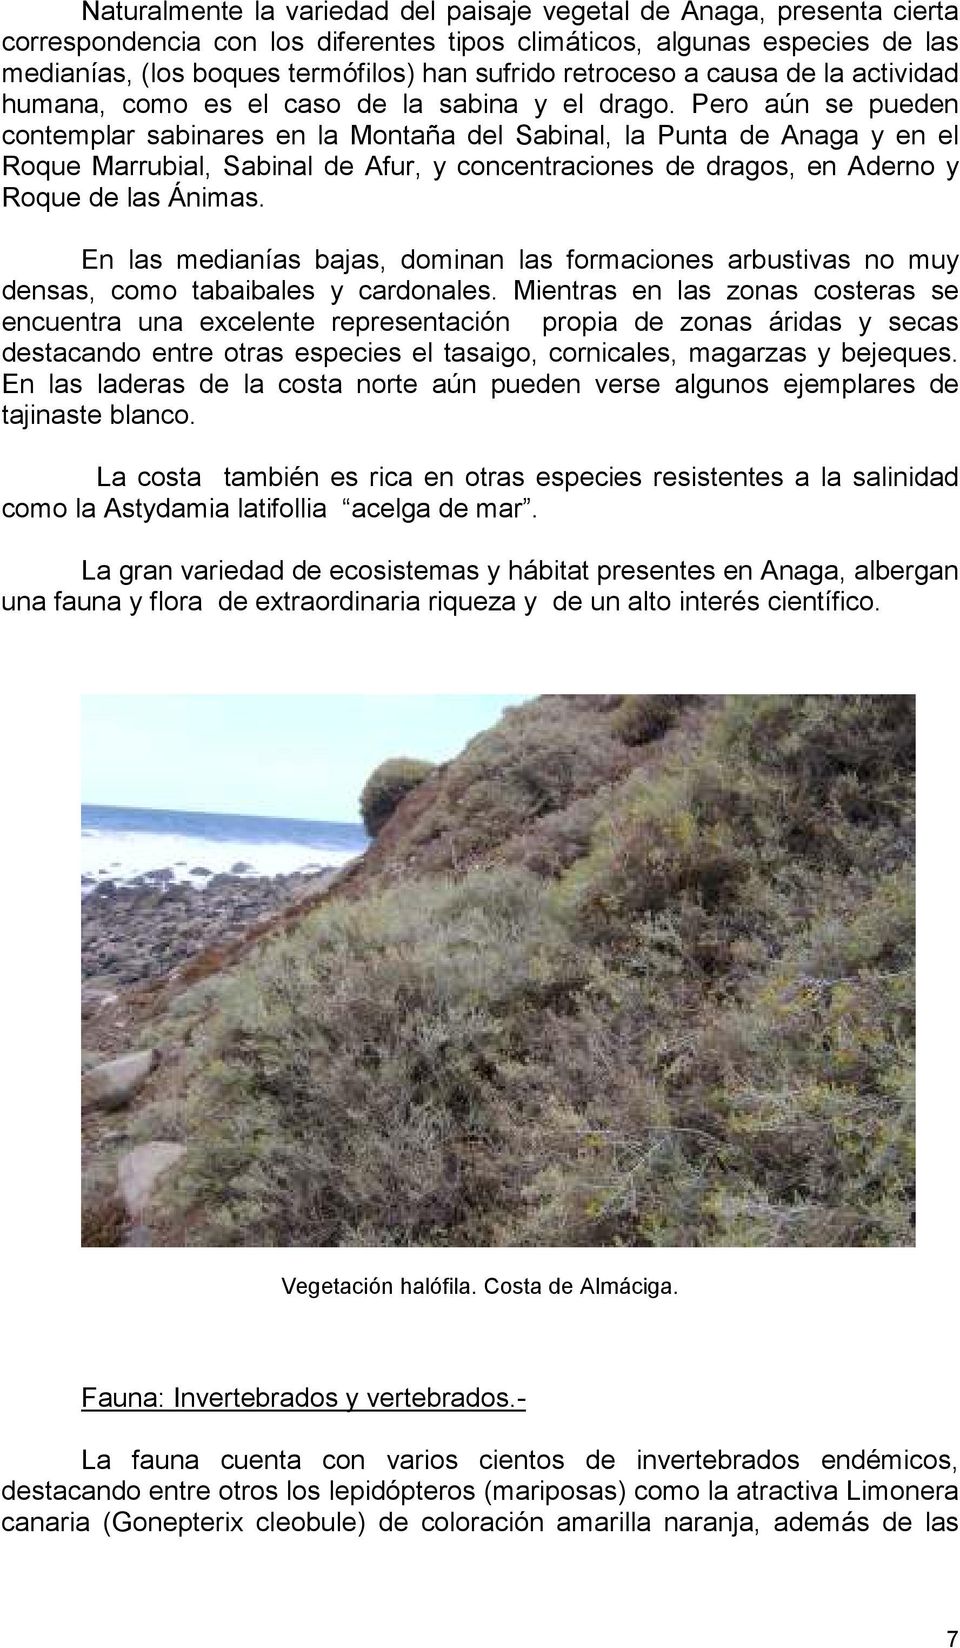 Pero aún se pueden contemplar sabinares en la Montaña del Sabinal, la Punta de Anaga y en el Roque Marrubial, Sabinal de Afur, y concentraciones de dragos, en Aderno y Roque de las Ánimas.